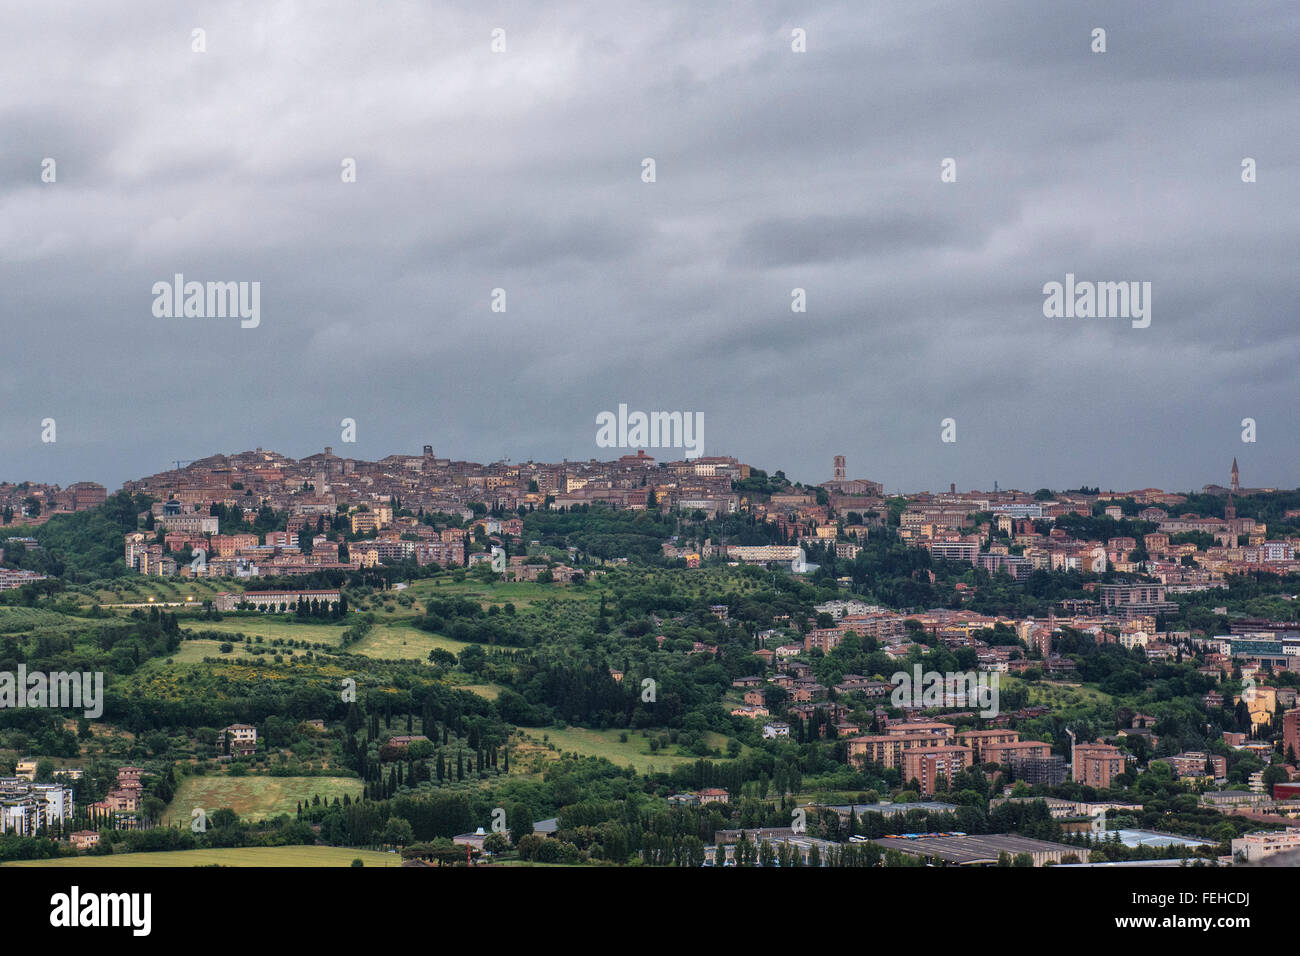 Foto panoramica di Perugia, capitale dell'Umbria, centro dell'Italia. La figura mostra che la città è situata su una collina. Foto Stock